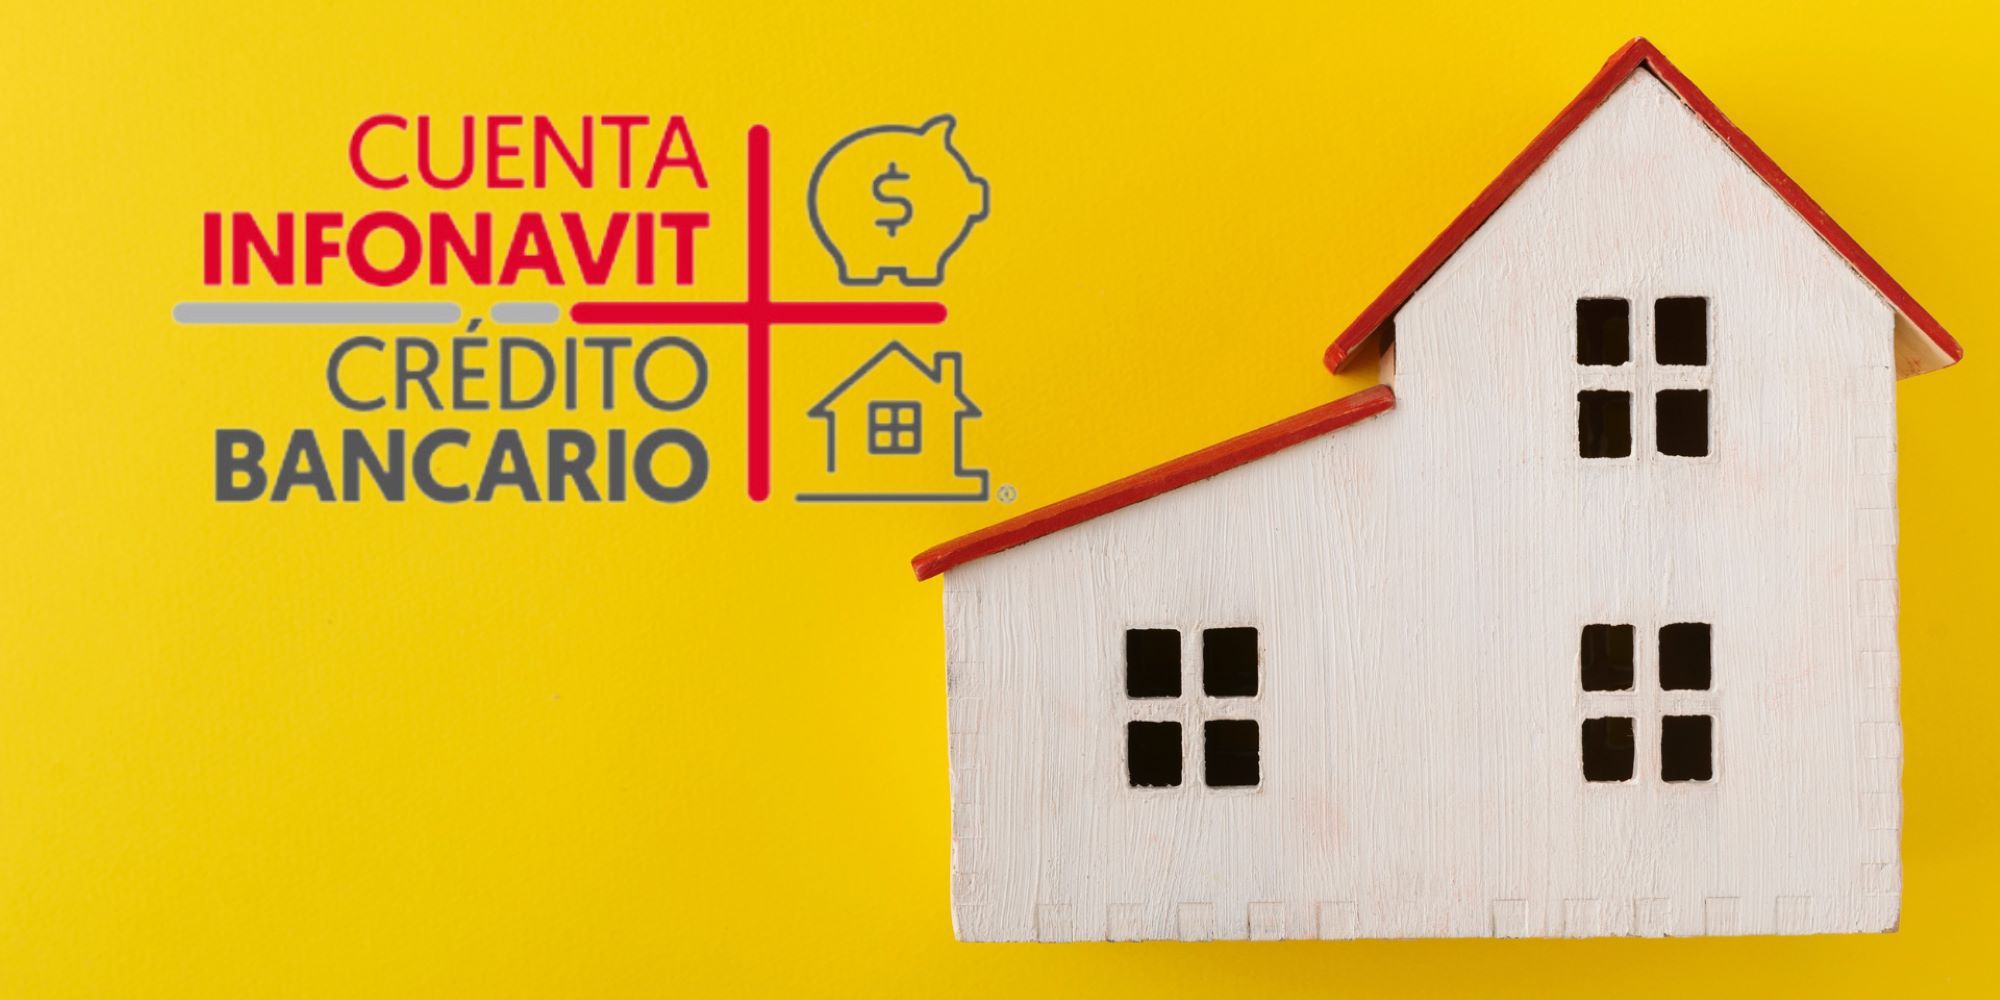 Trabajadores independientes pueden usar Cuenta Infonavit mas Crédito Bancario. Casita con logo del Infonavit.